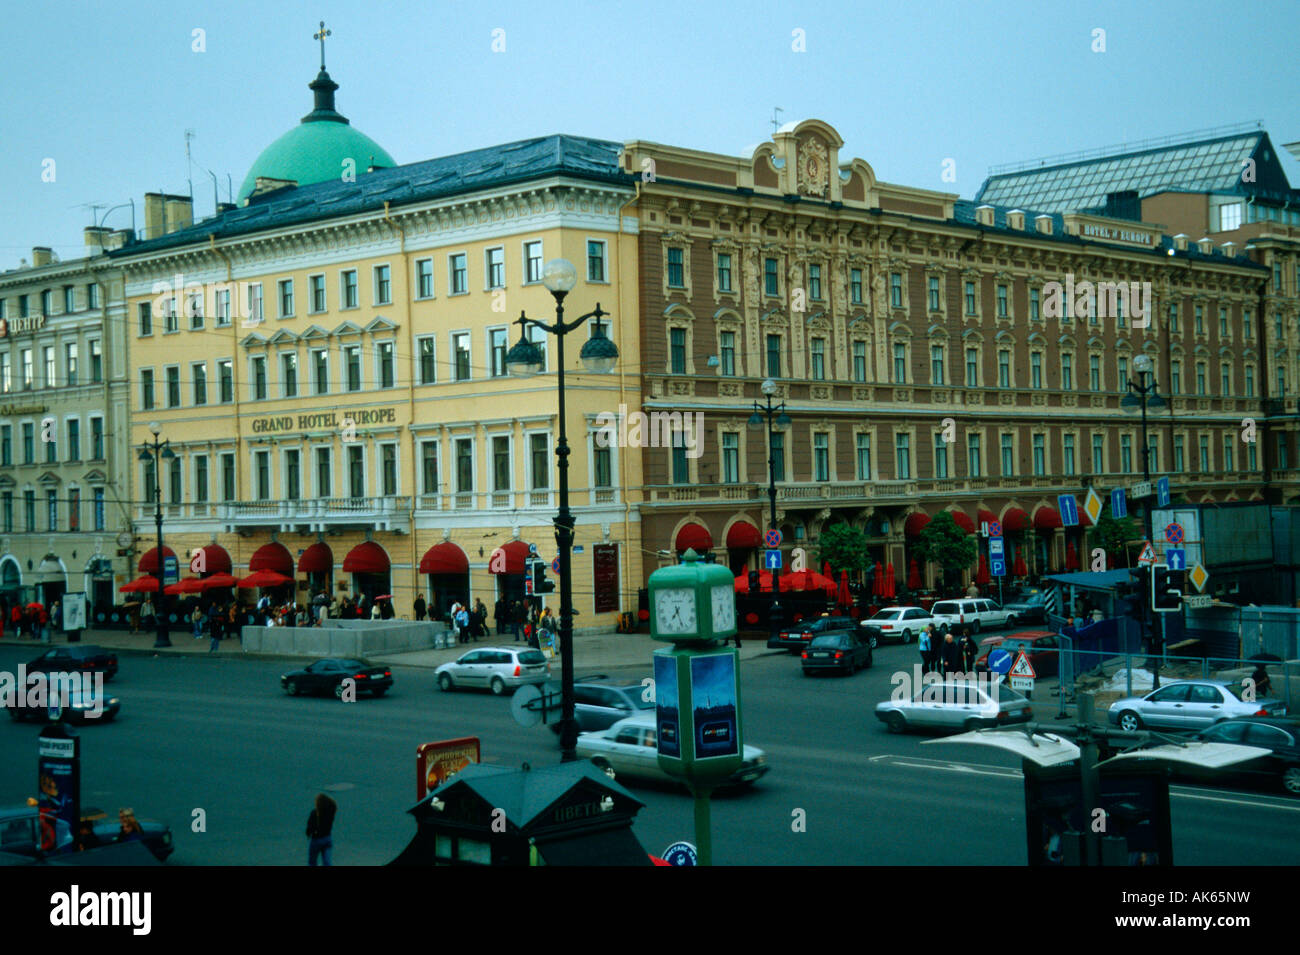 File:Belmond Grand Hotel Europe Saint Petersburg external view.jpg